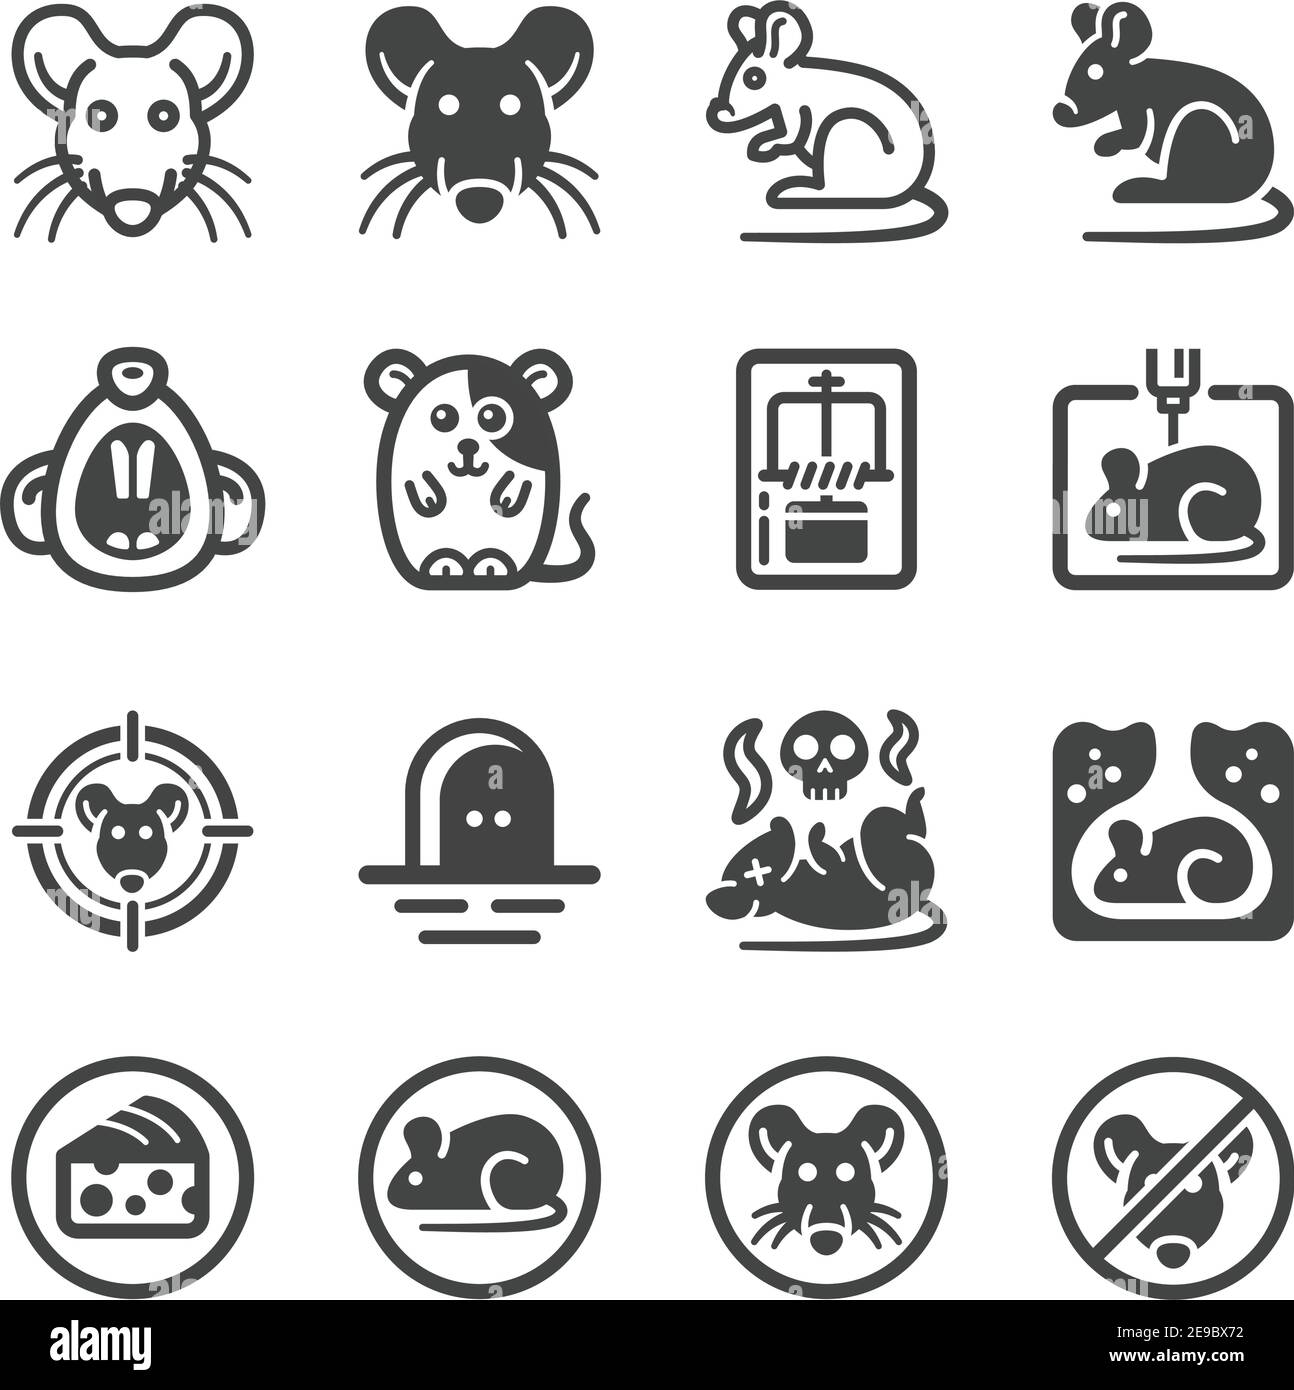 Ratte Icon Set, Tier und Schädling Icon, Vektor und Illustration Stock Vektor